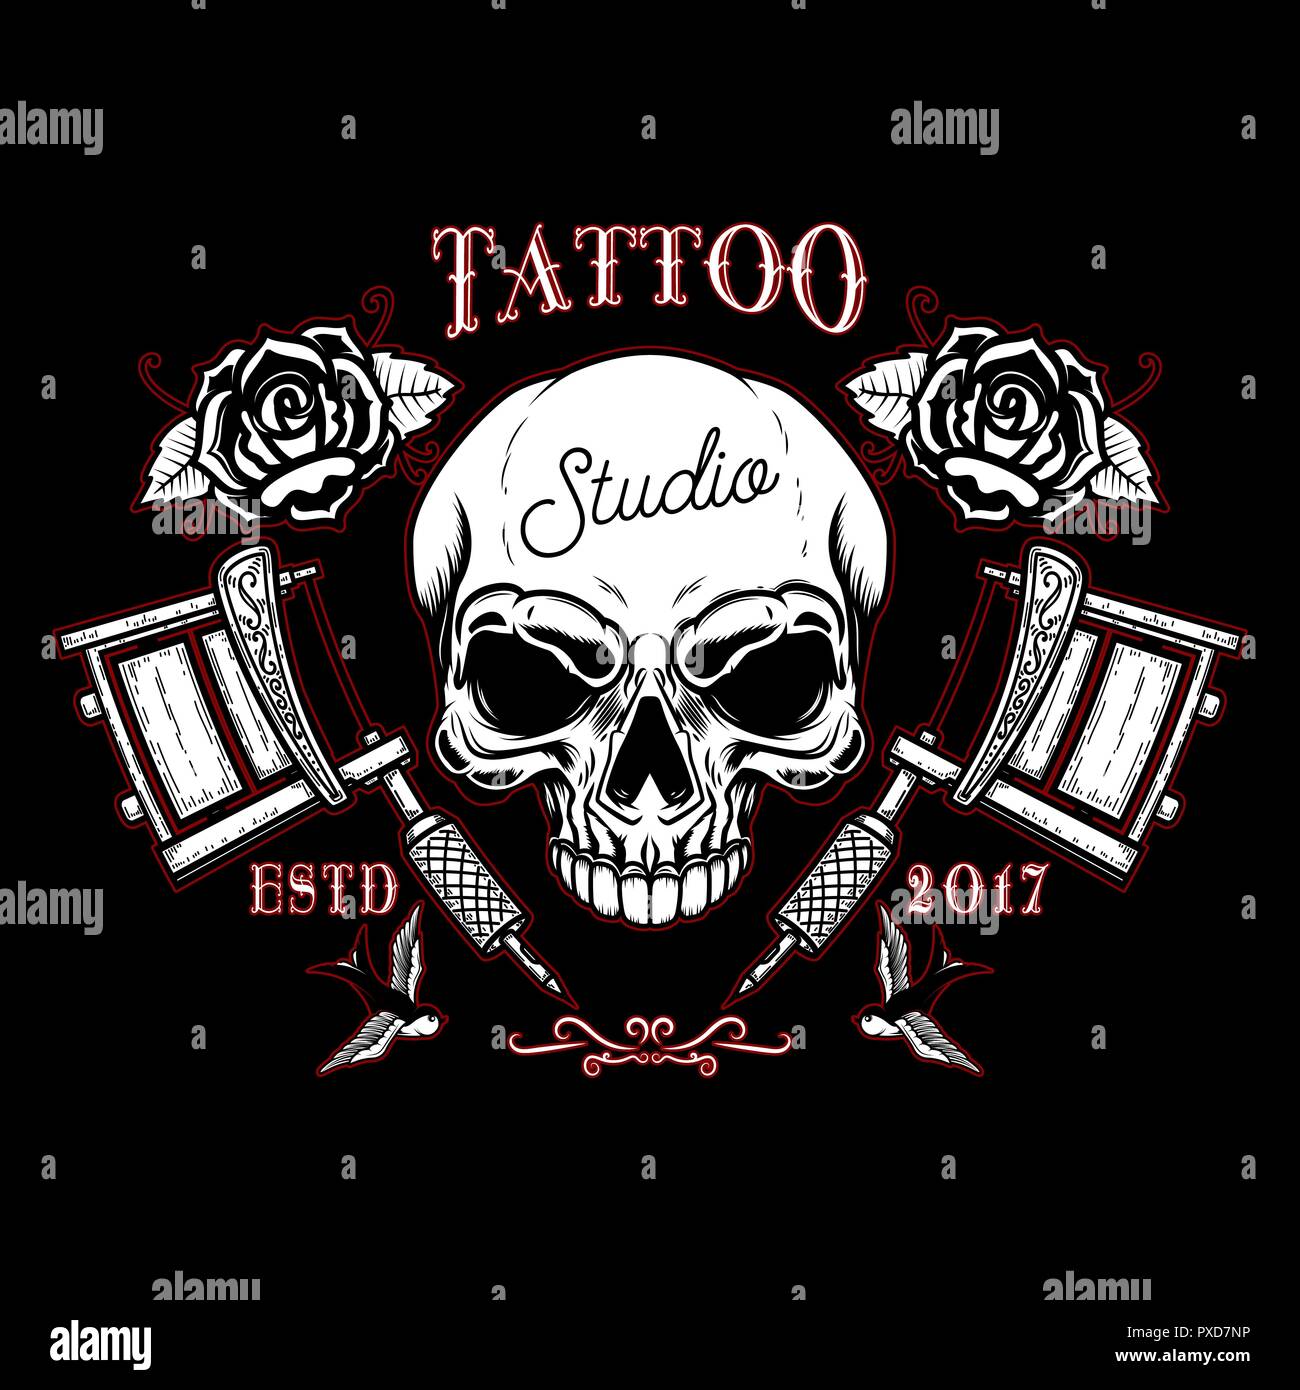 Tattoo Eagle Skull Roses Logo Scrolls Stock Vector by ©m.j.h1nkle 472671416